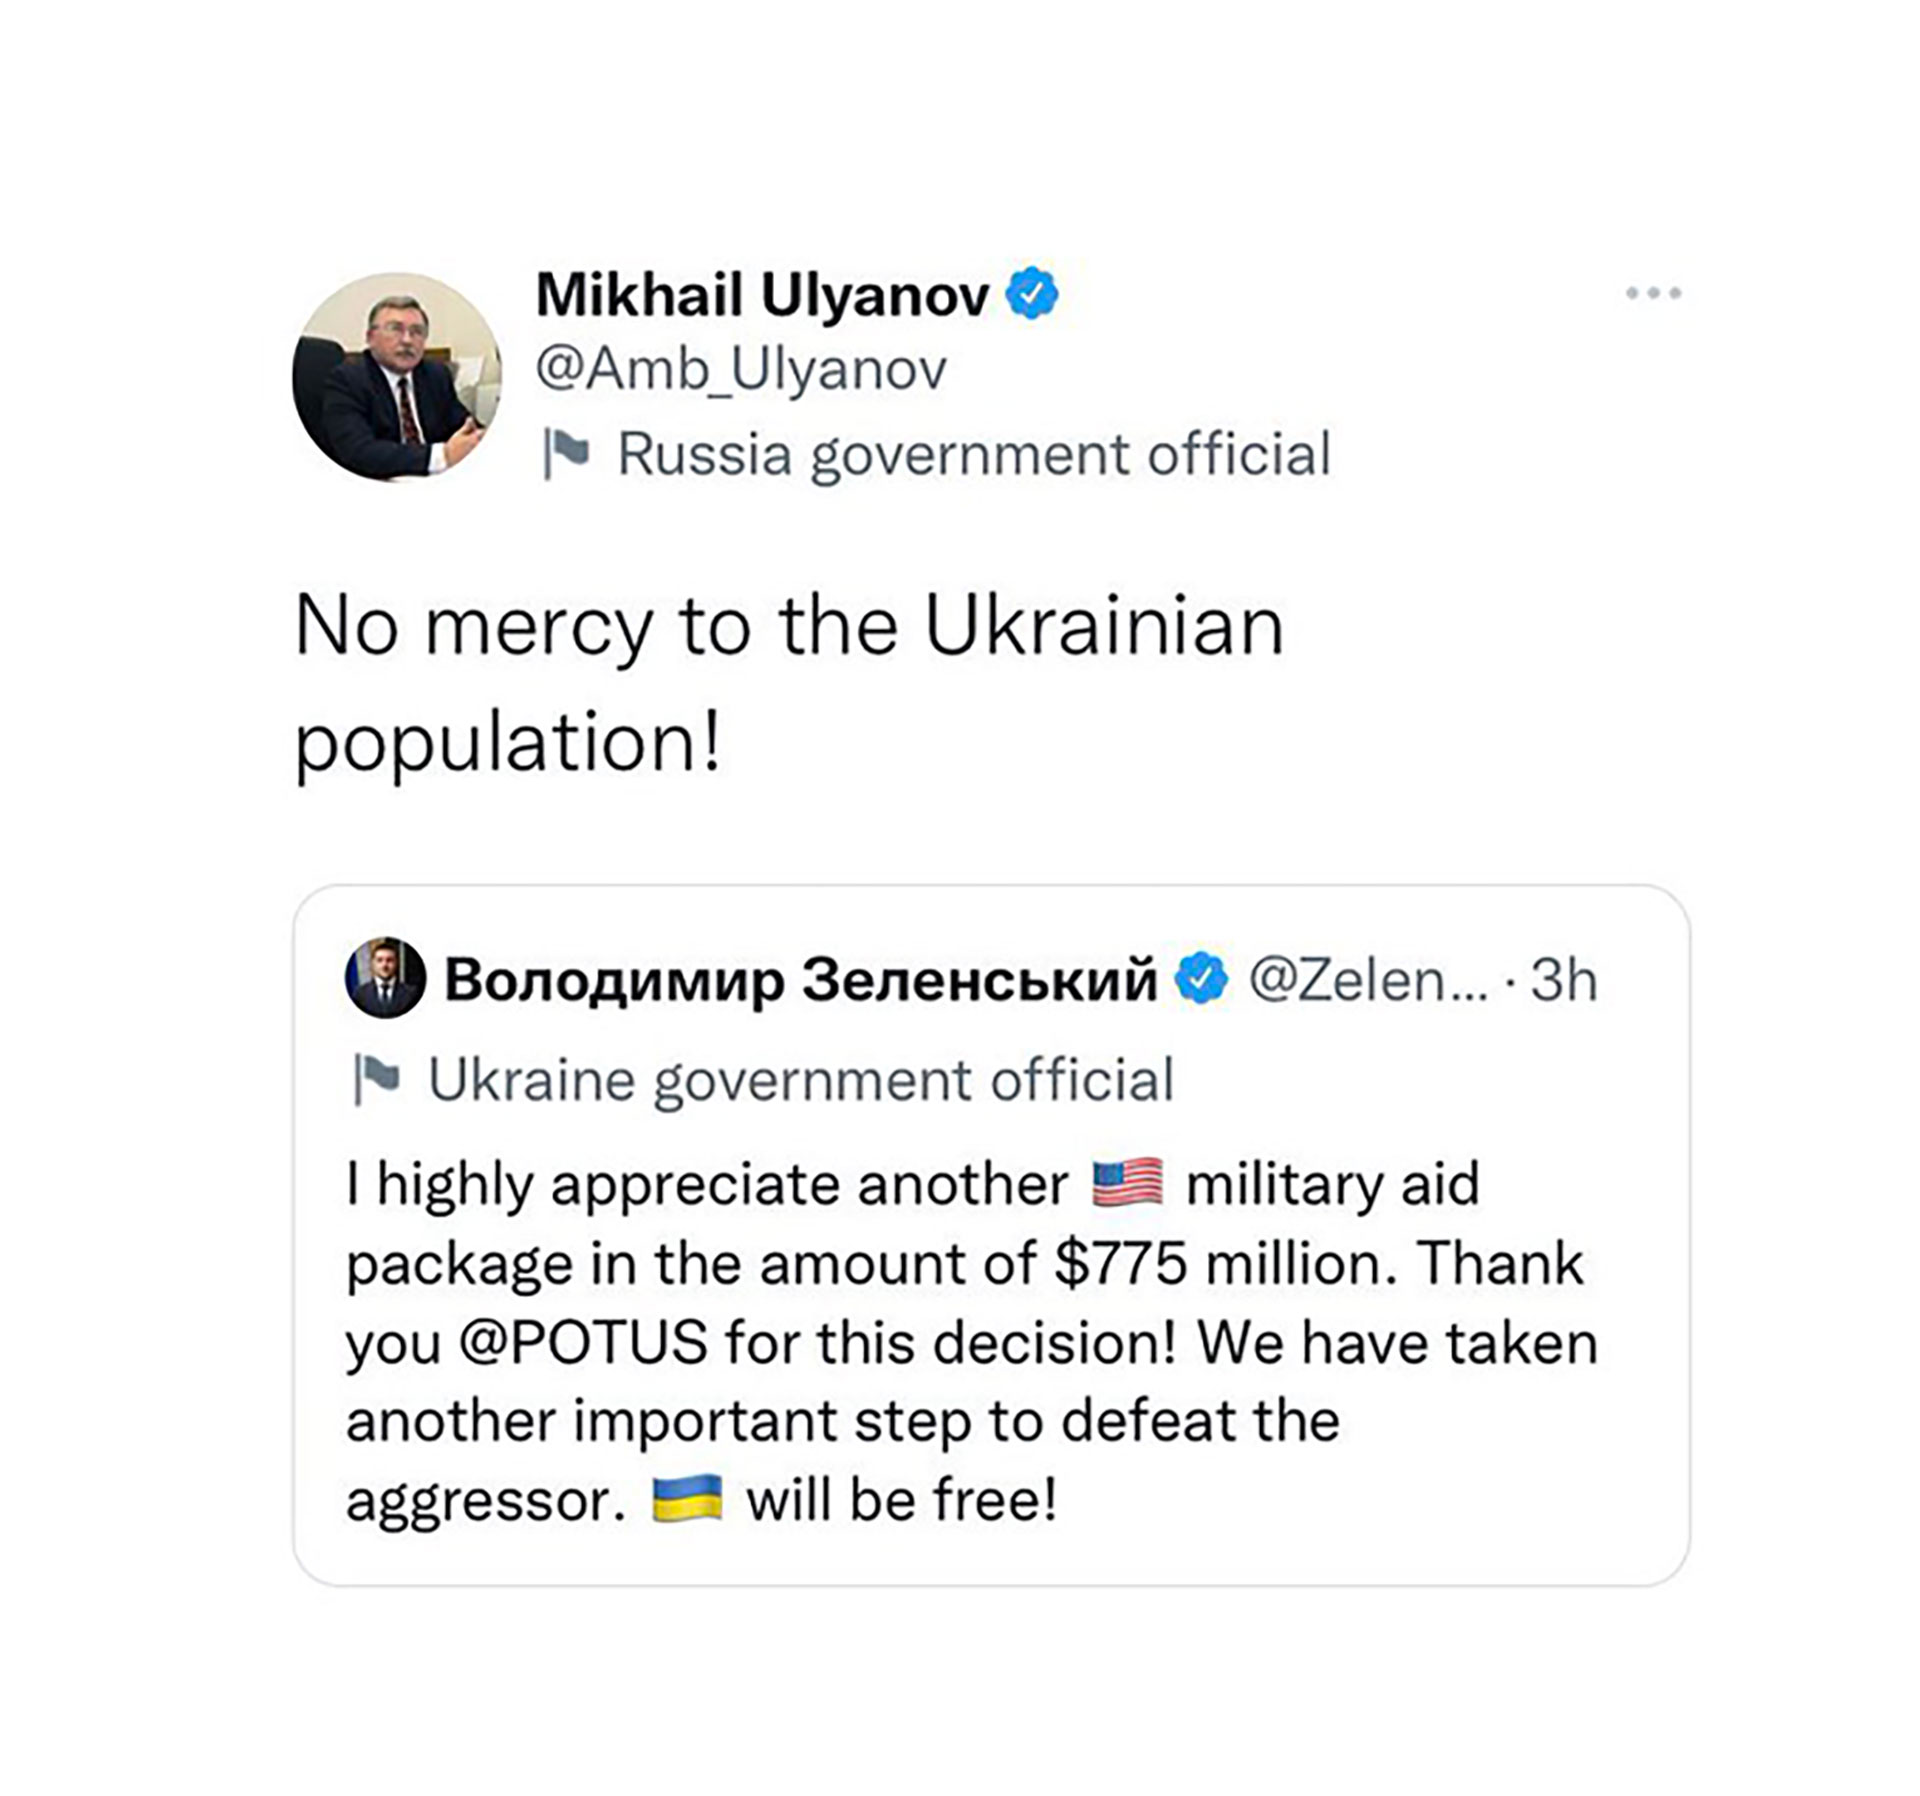 Der Tweet von Mikhail Ulyanov wurde später gelöscht